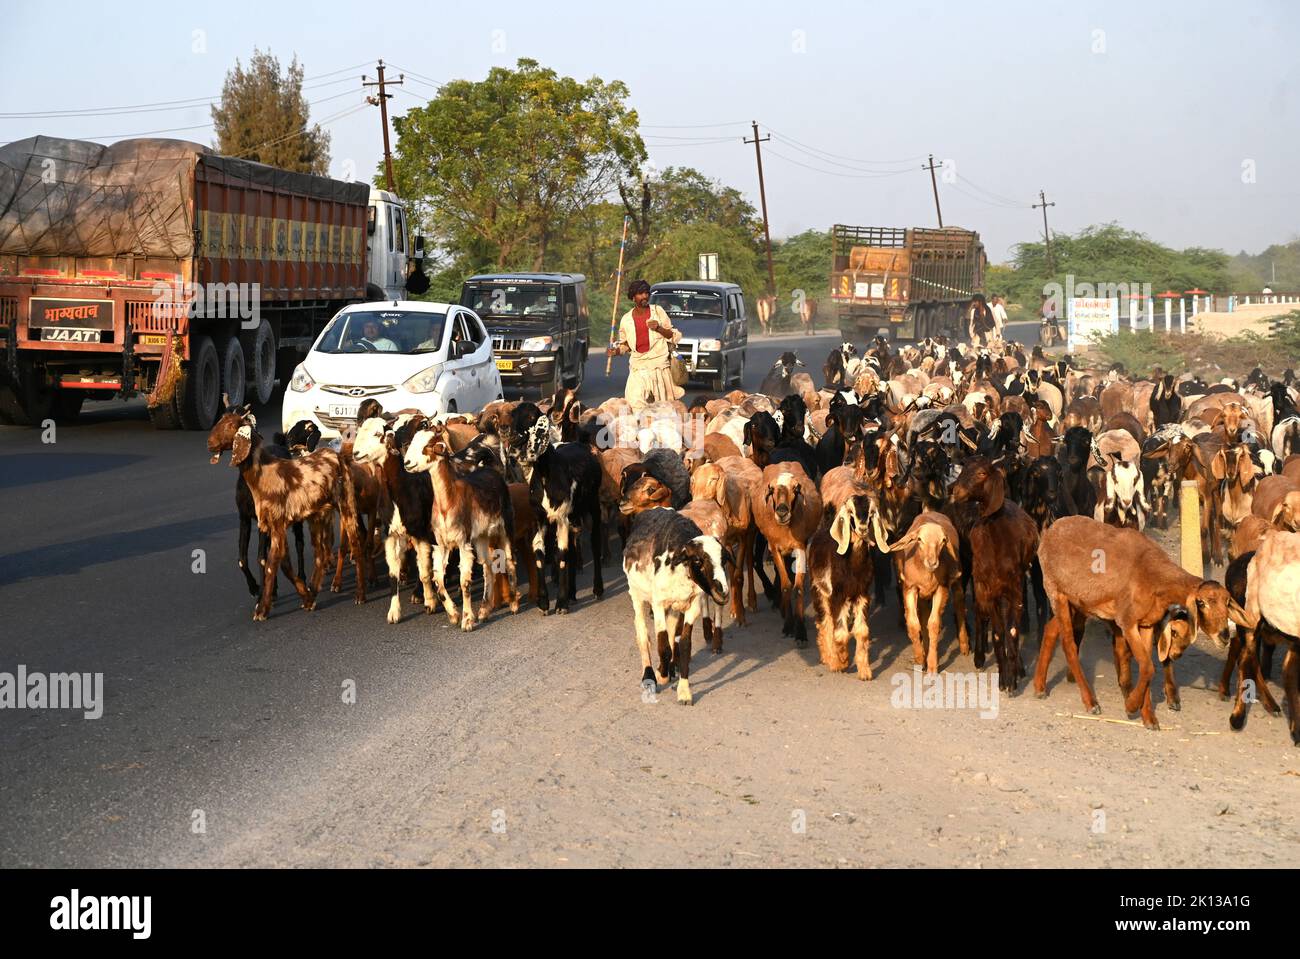 Les chèvres étant ici de retour à la maison au crépuscule le long de la route principale et de la circulation lourde dans la ville de Bhuj, Gujarat, Inde, Asie Banque D'Images